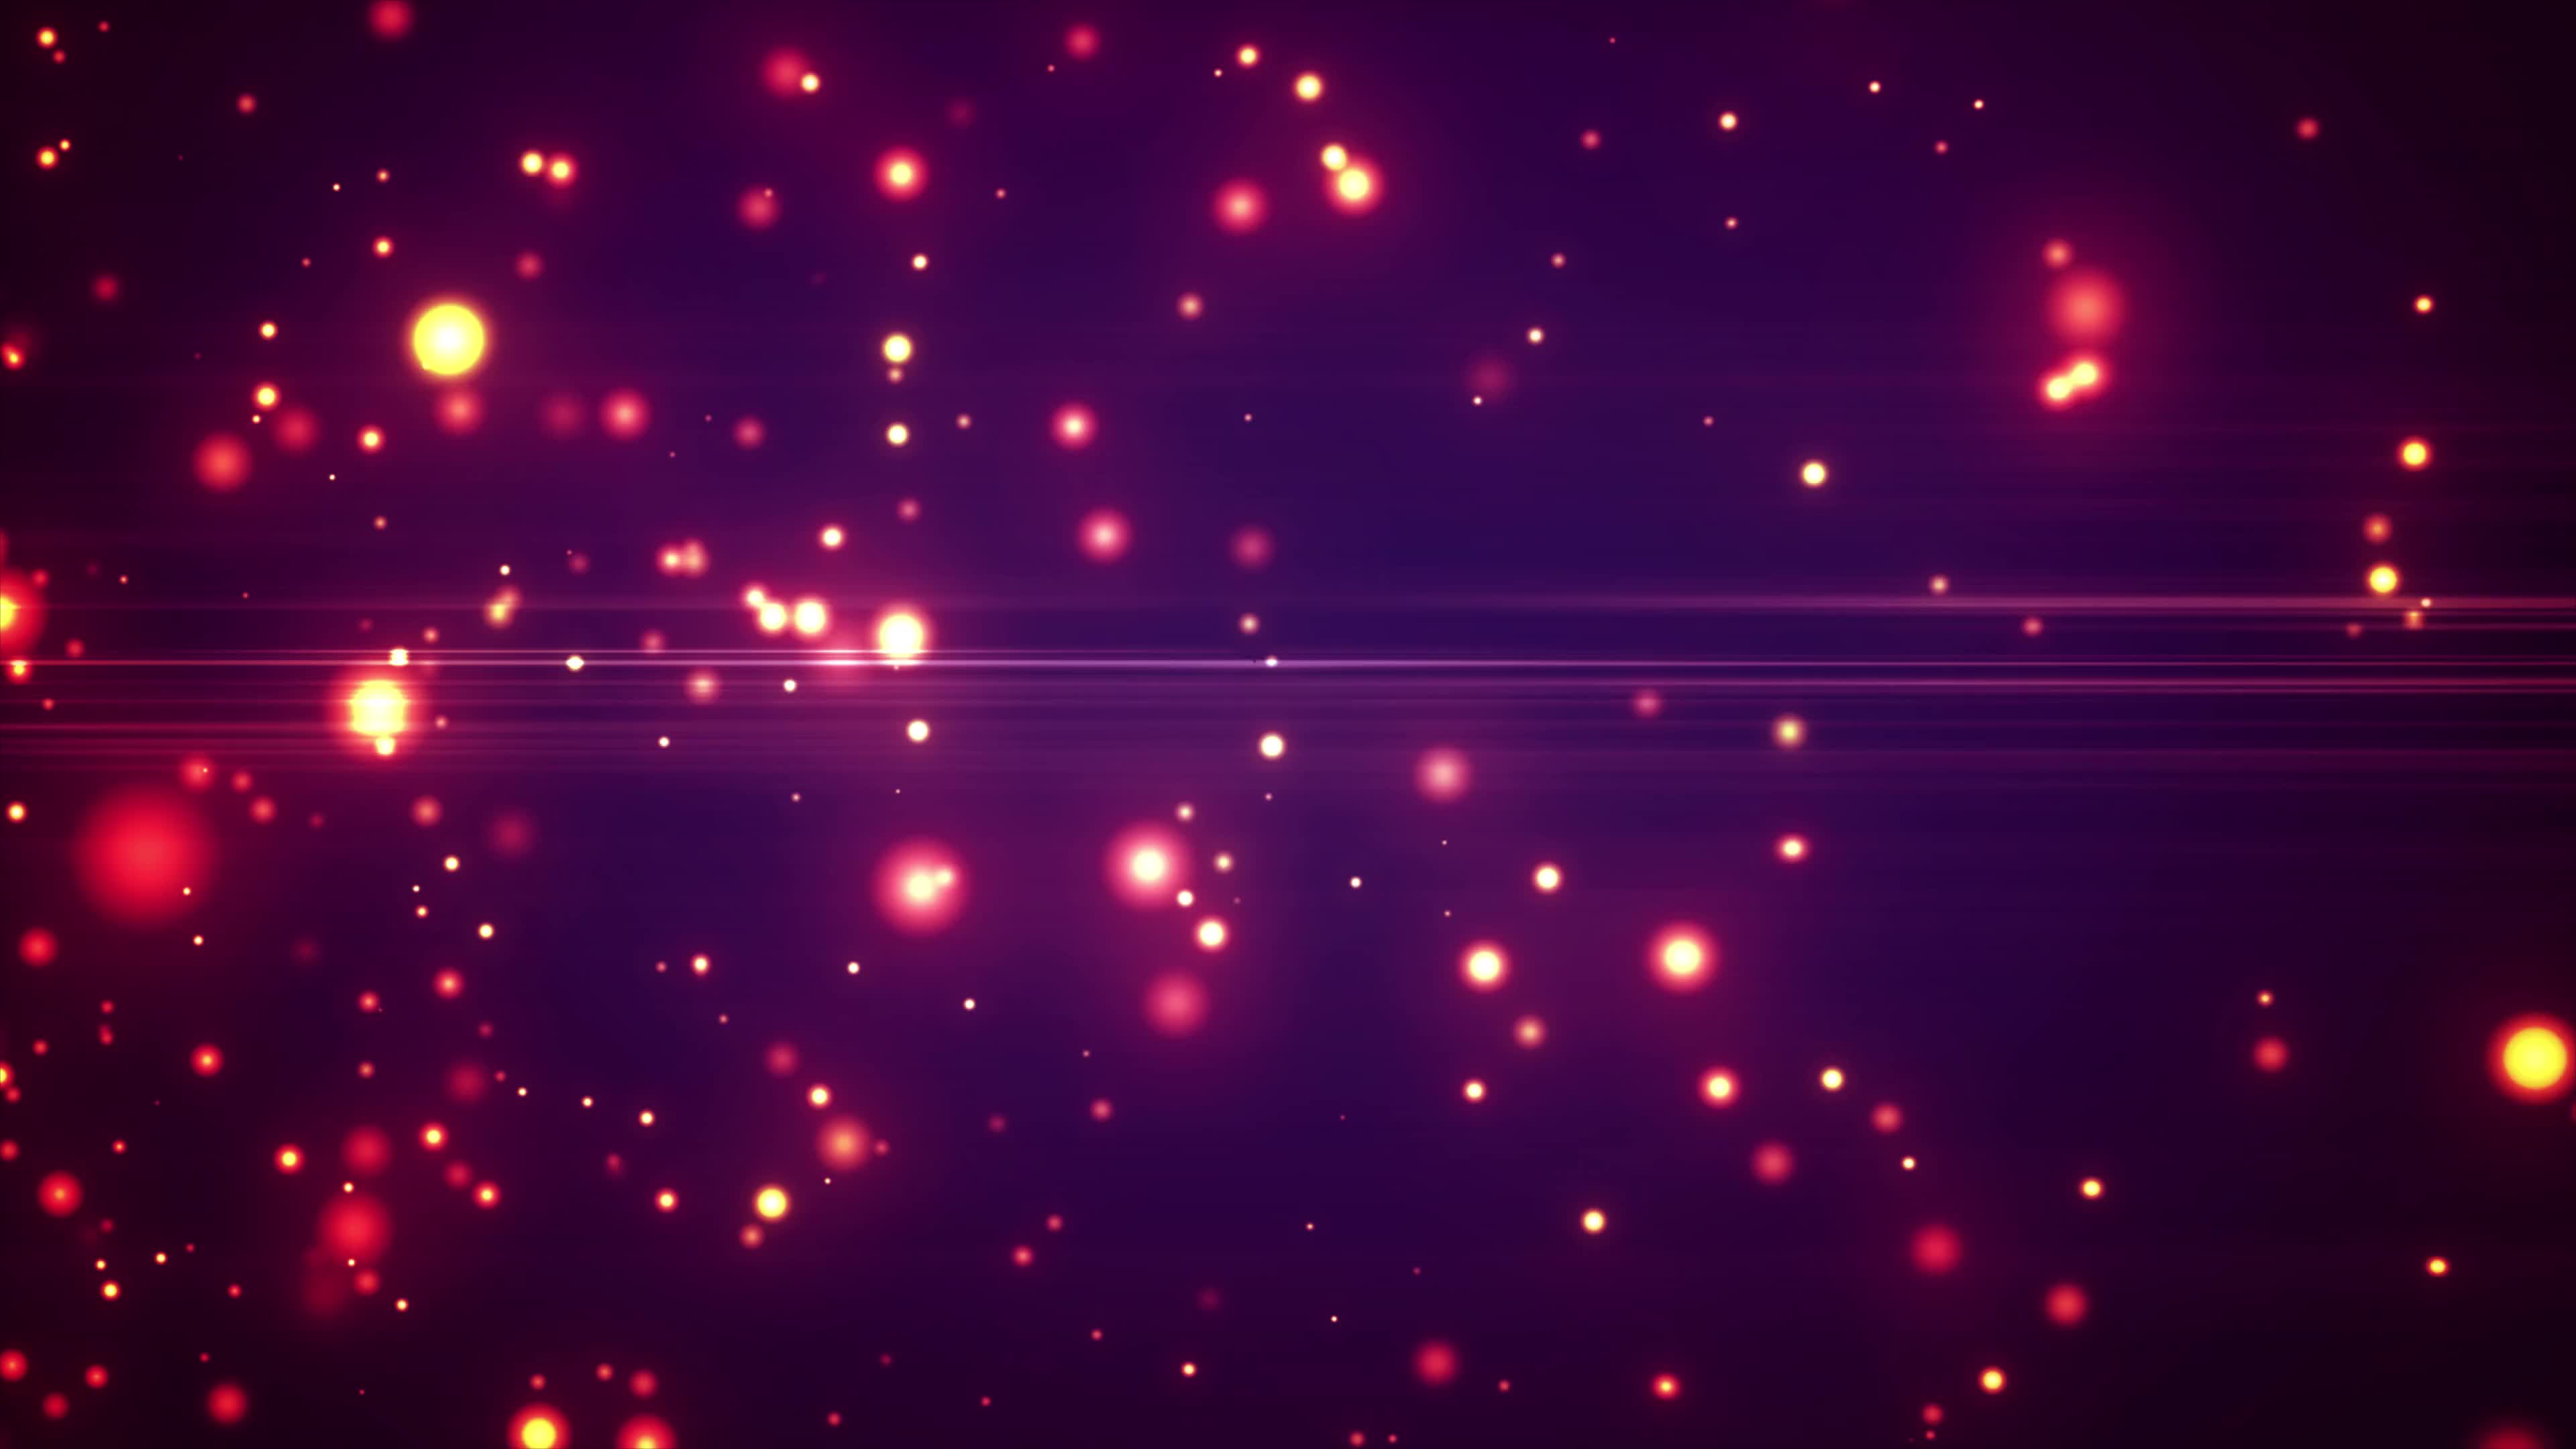 紫色粒子光效视频素材